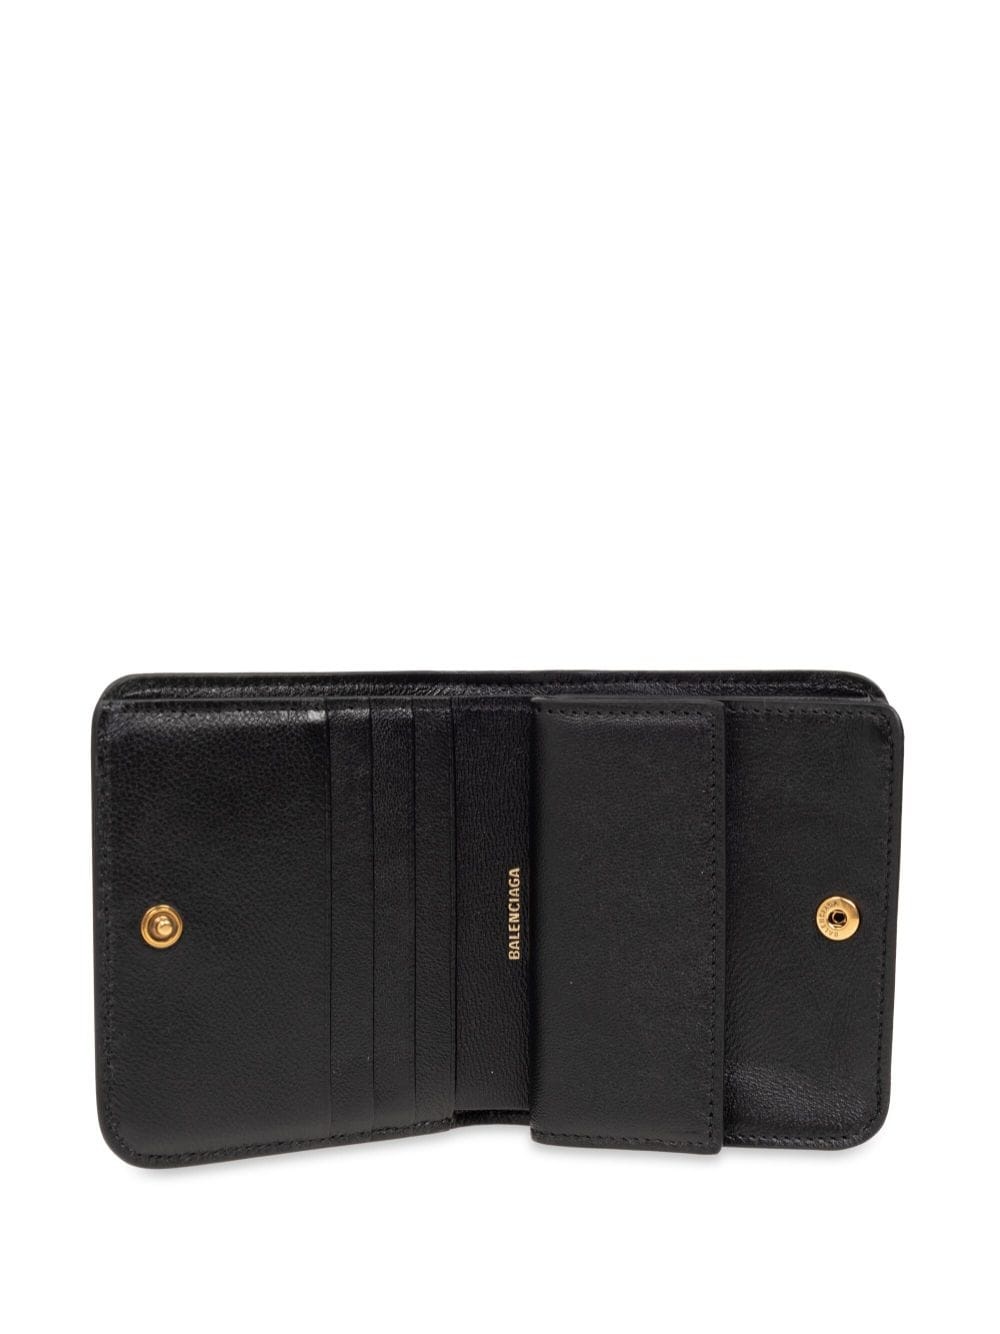 logo-debossed leather wallet - 4